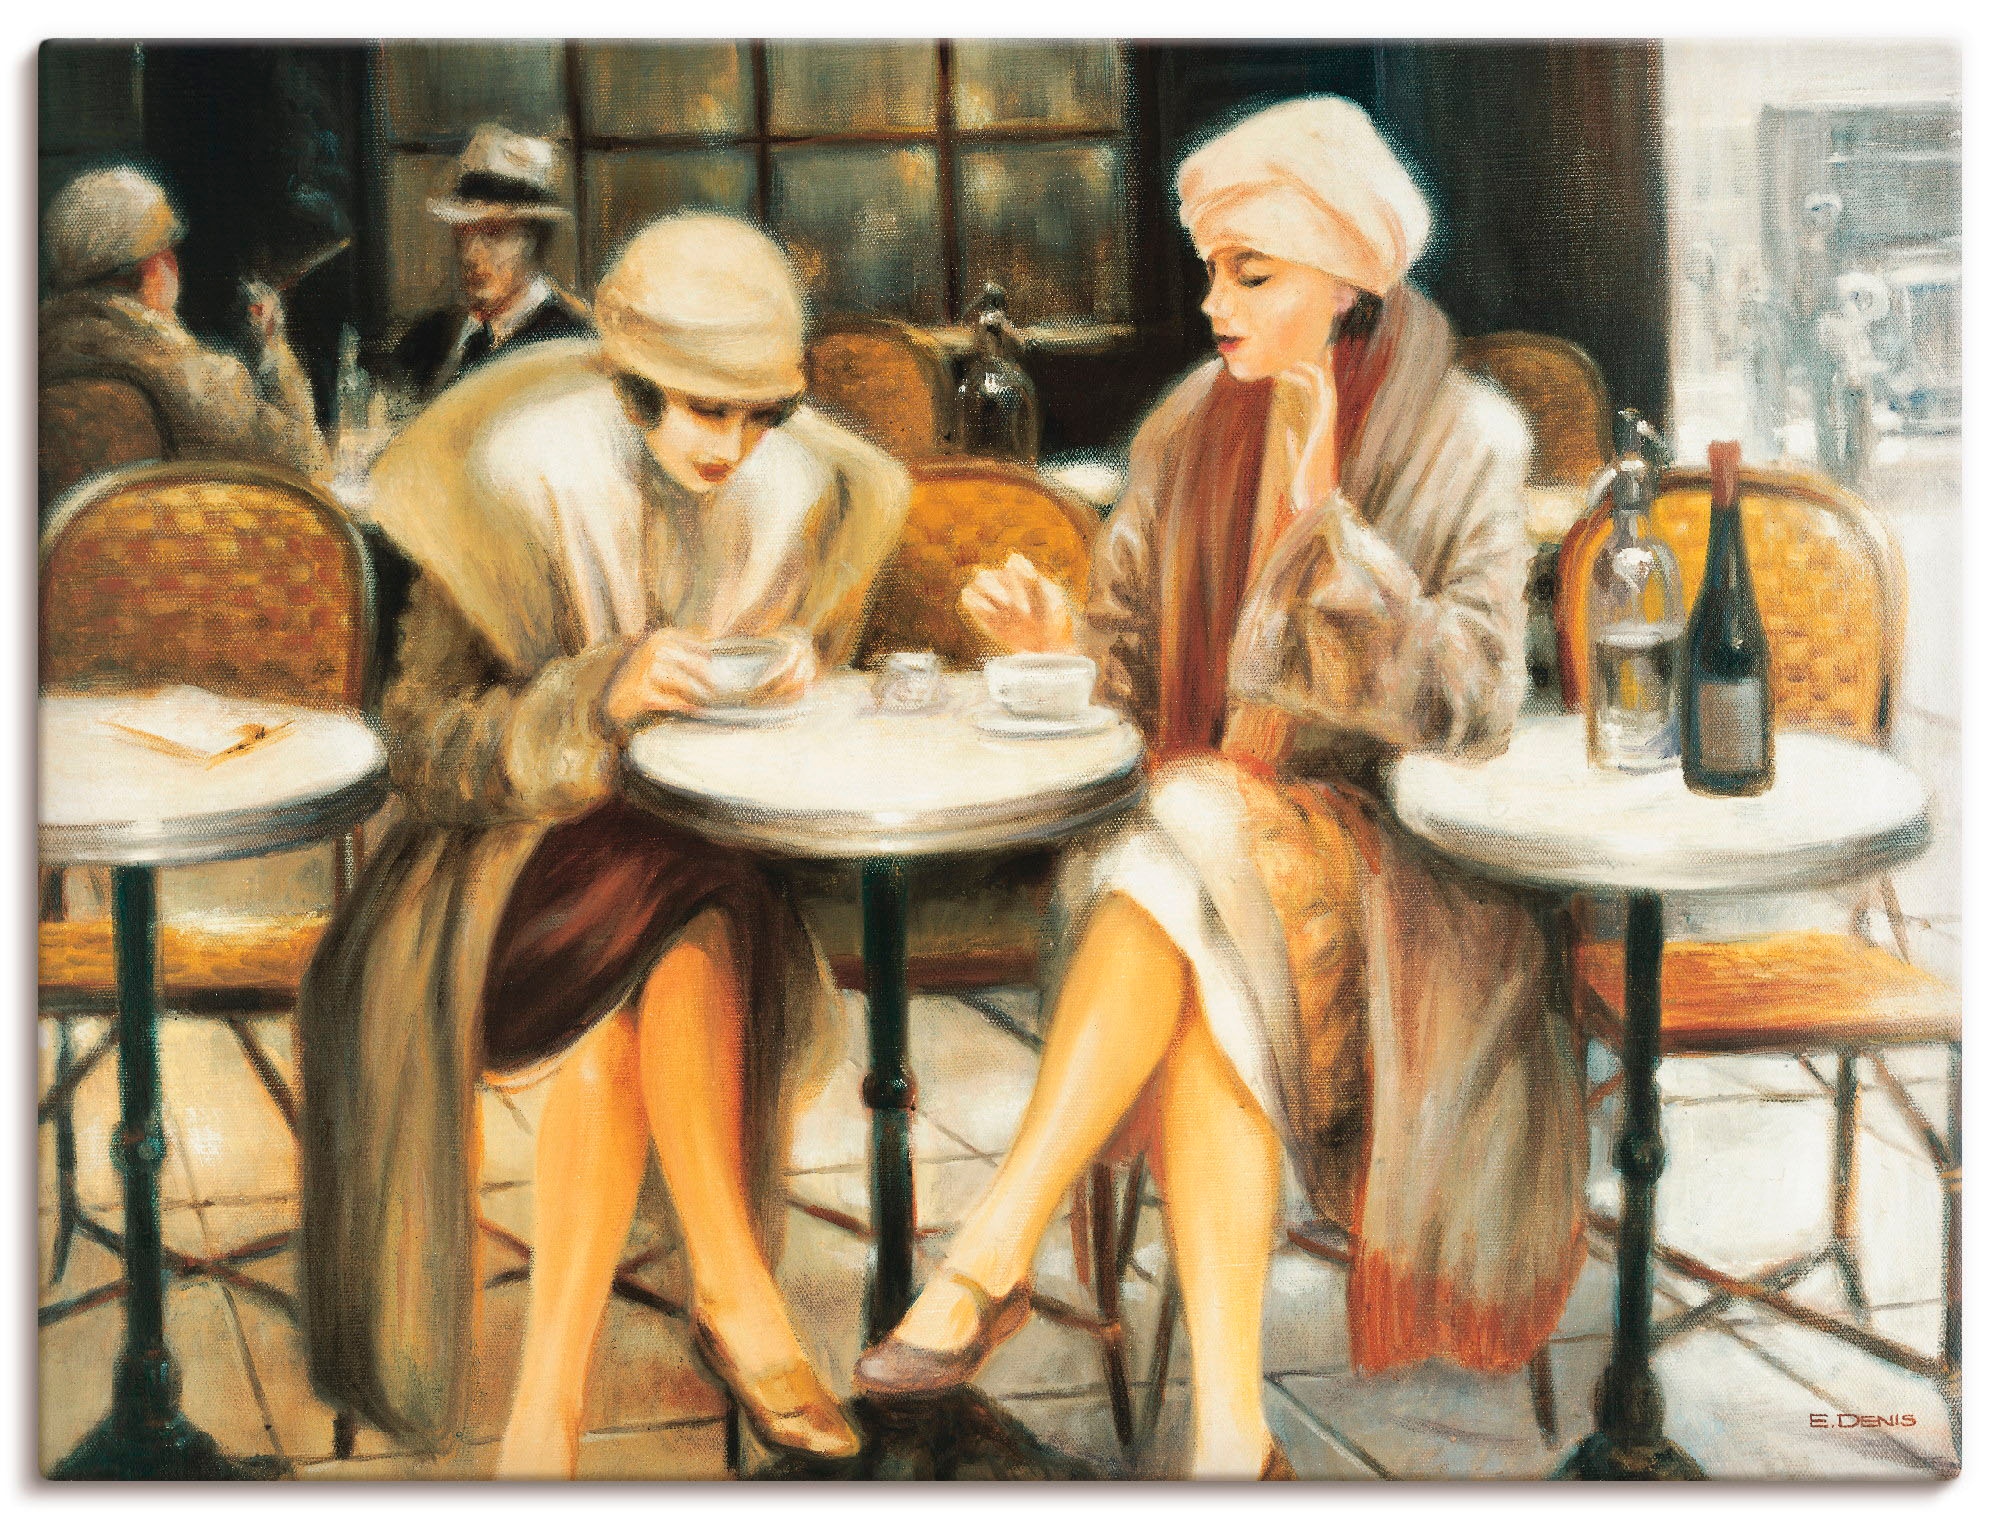 Artland Wandbild »Cafe III«, Frau, (1 St.), als Leinwandbild, Wandaufkleber oder Poster in versch. Größen